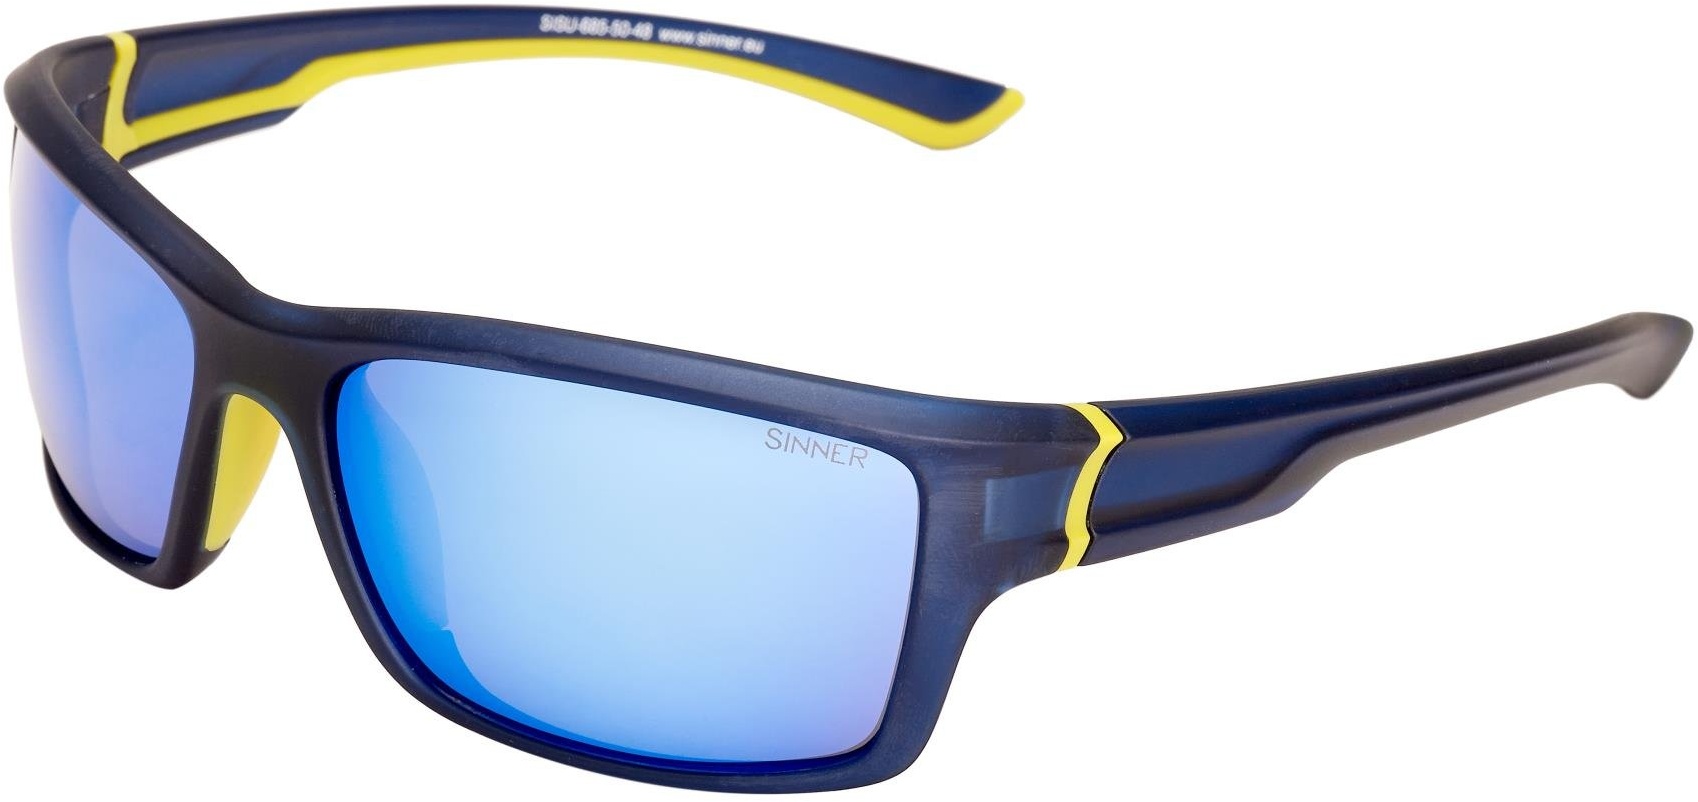 SINNER Erwachsene Sonnenbrille Cayo Sportbril Polycarbonat, Blau / Gelb, SISU-685-50-48